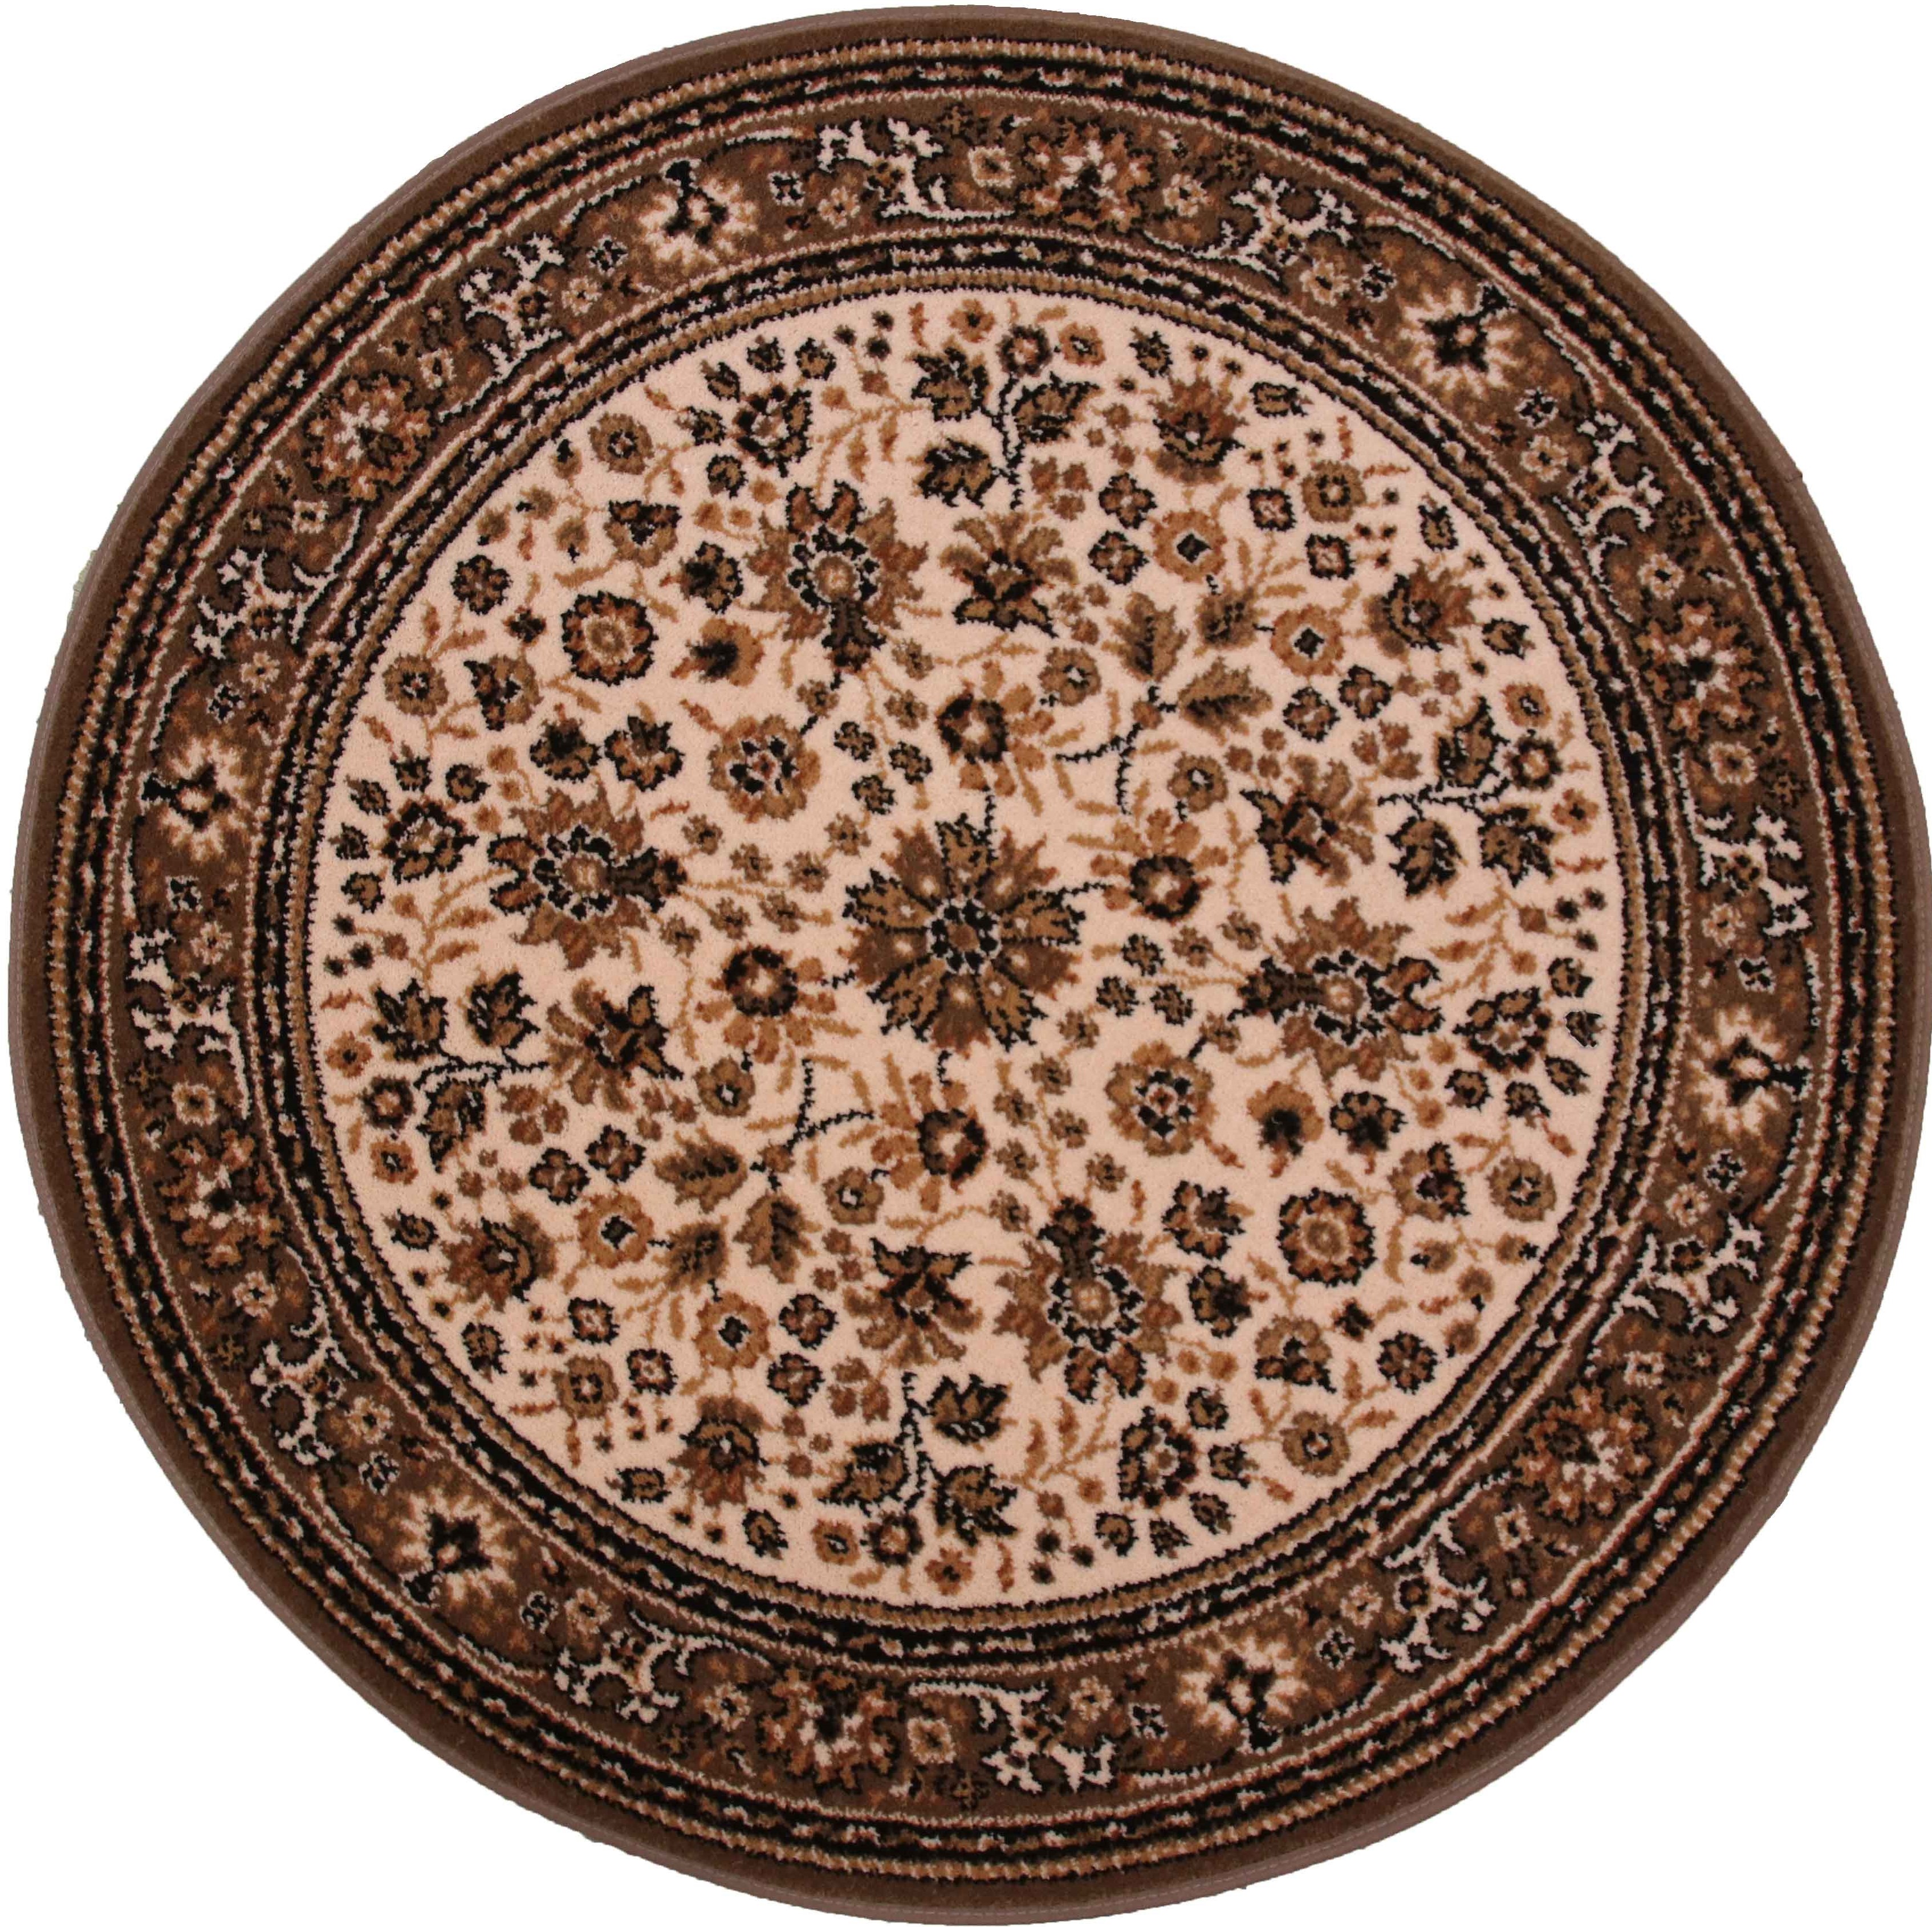 Teppich Lano Royal Klassisch Orientalisch braun/beige 80cm rund